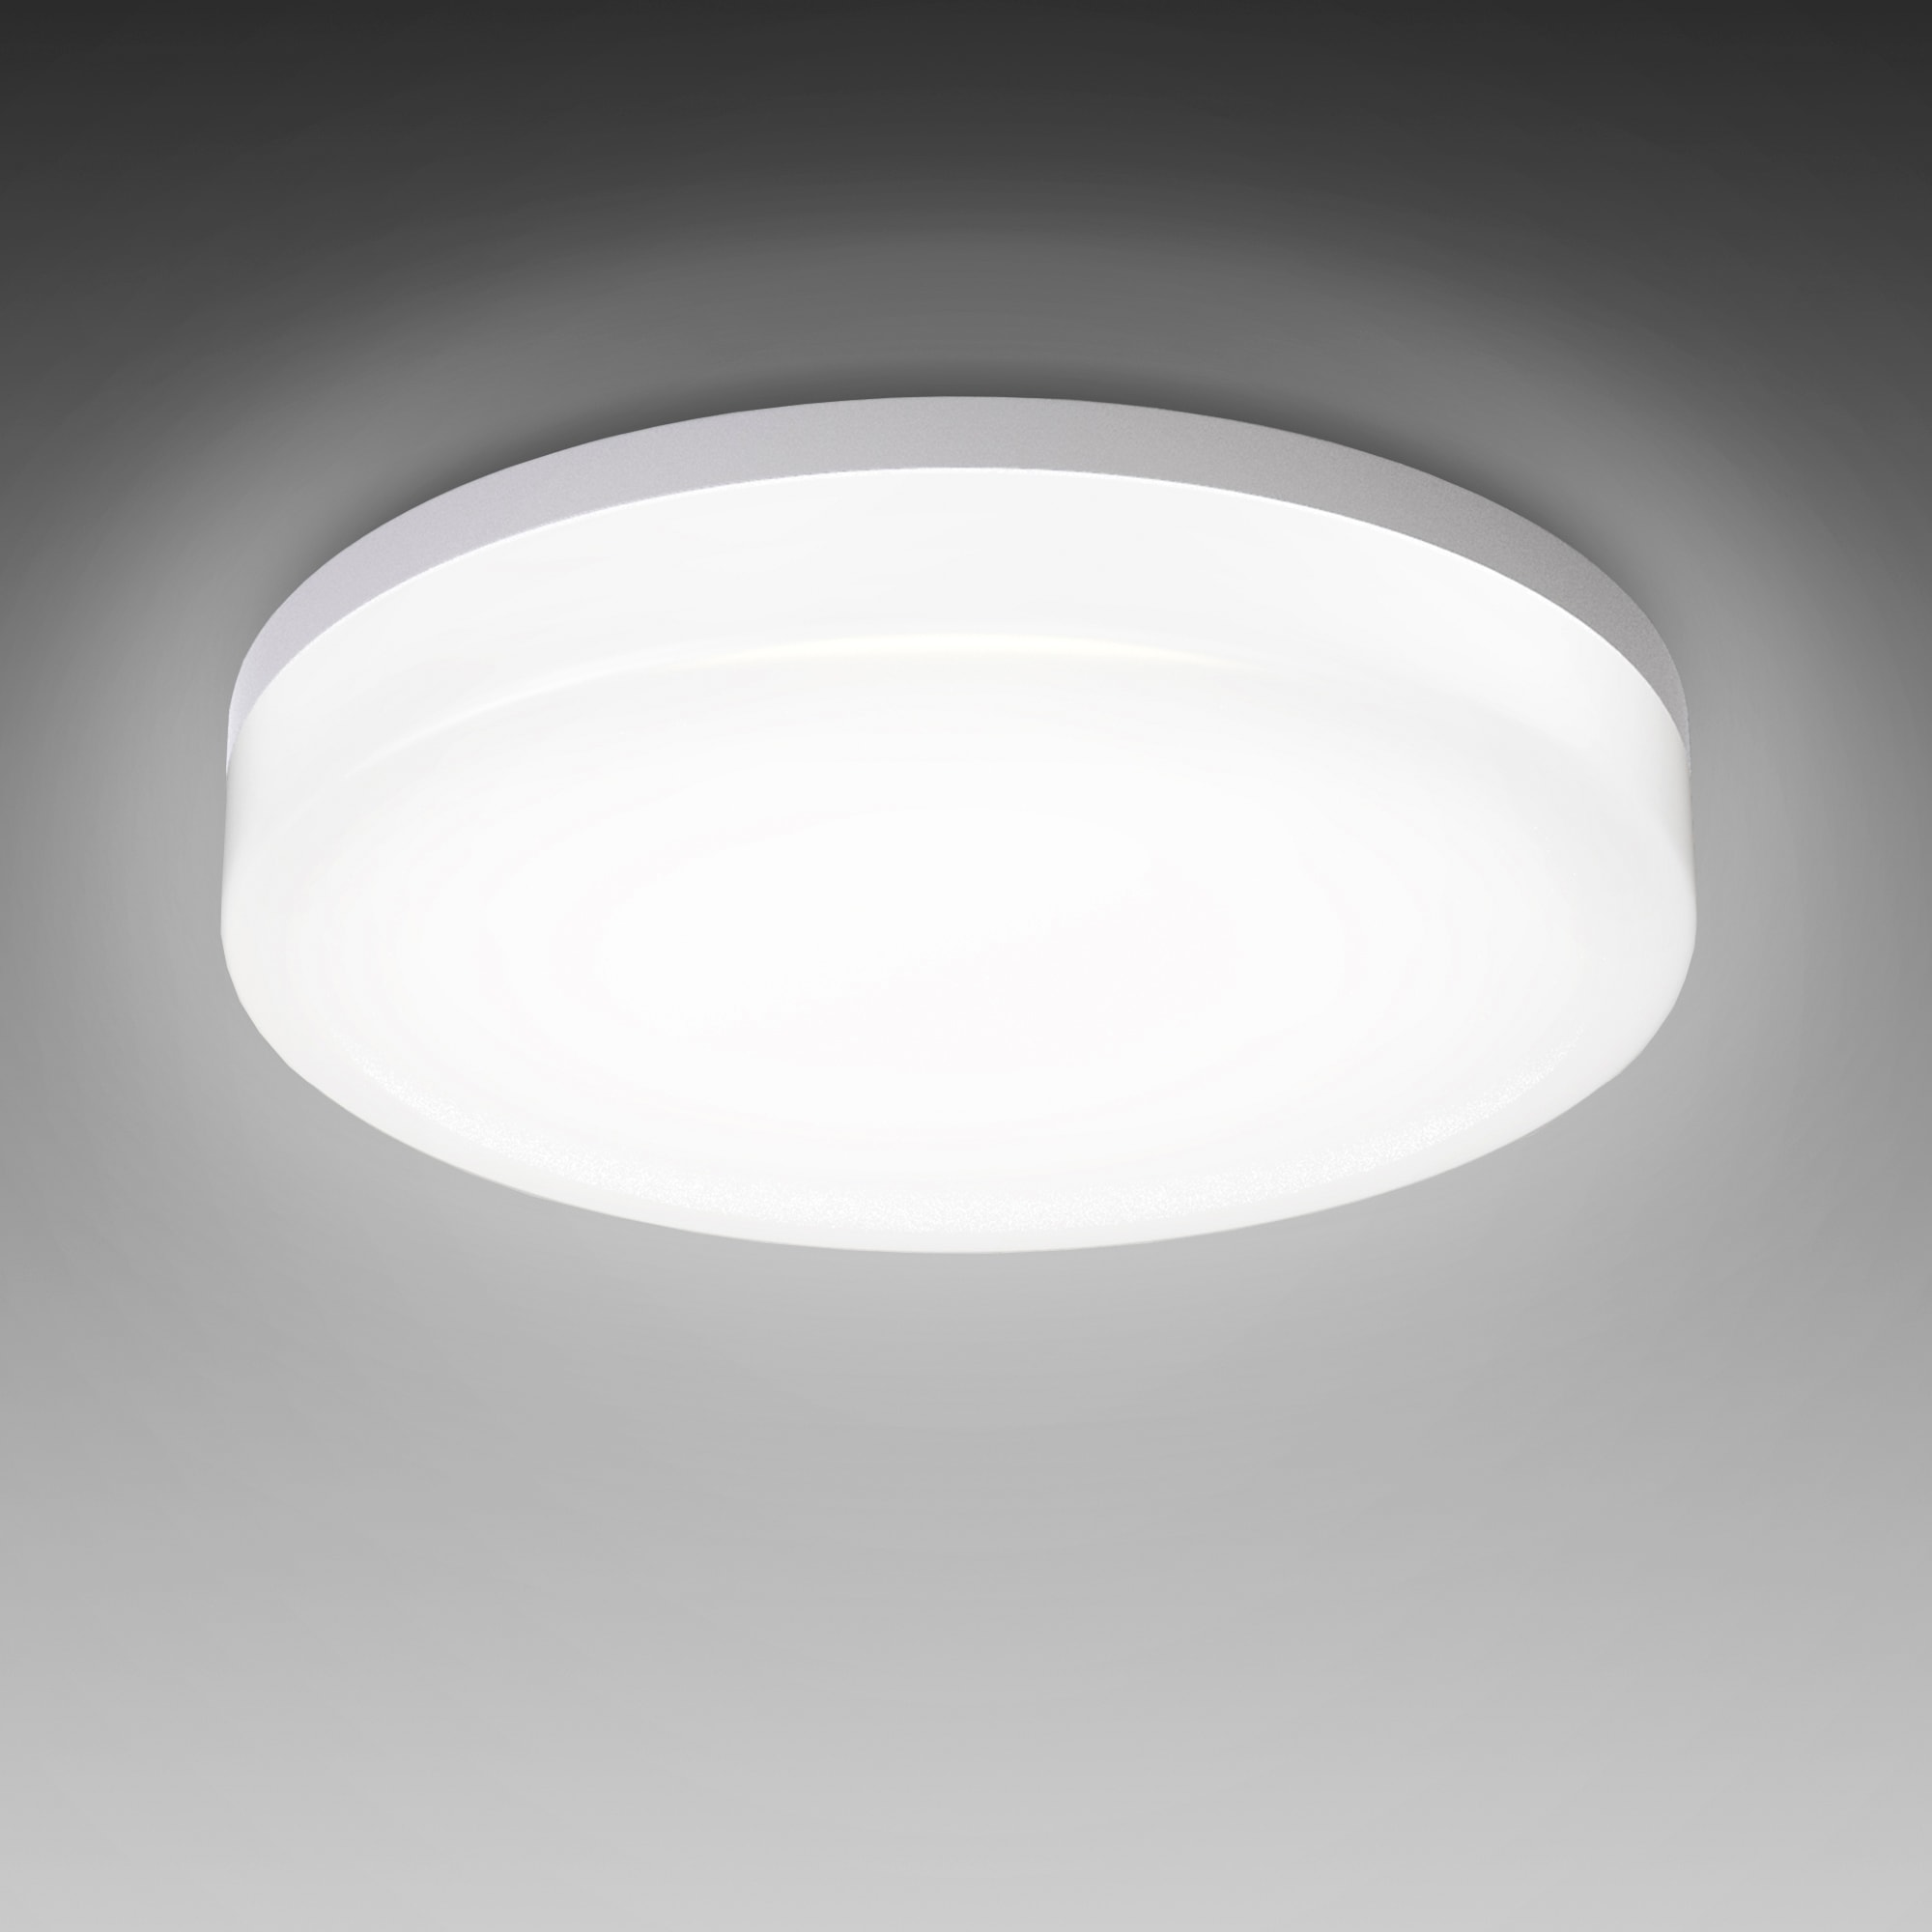 B.K.Licht LED Deckenleuchte »BK_DB1171 LED Bad-Deckenleuchte, Ø22cm, IP54, 13W, 4.000K«, 1 flammig-flammig, Neutralweißes Licht, Spritzwassergeschützt, LED Badlampe